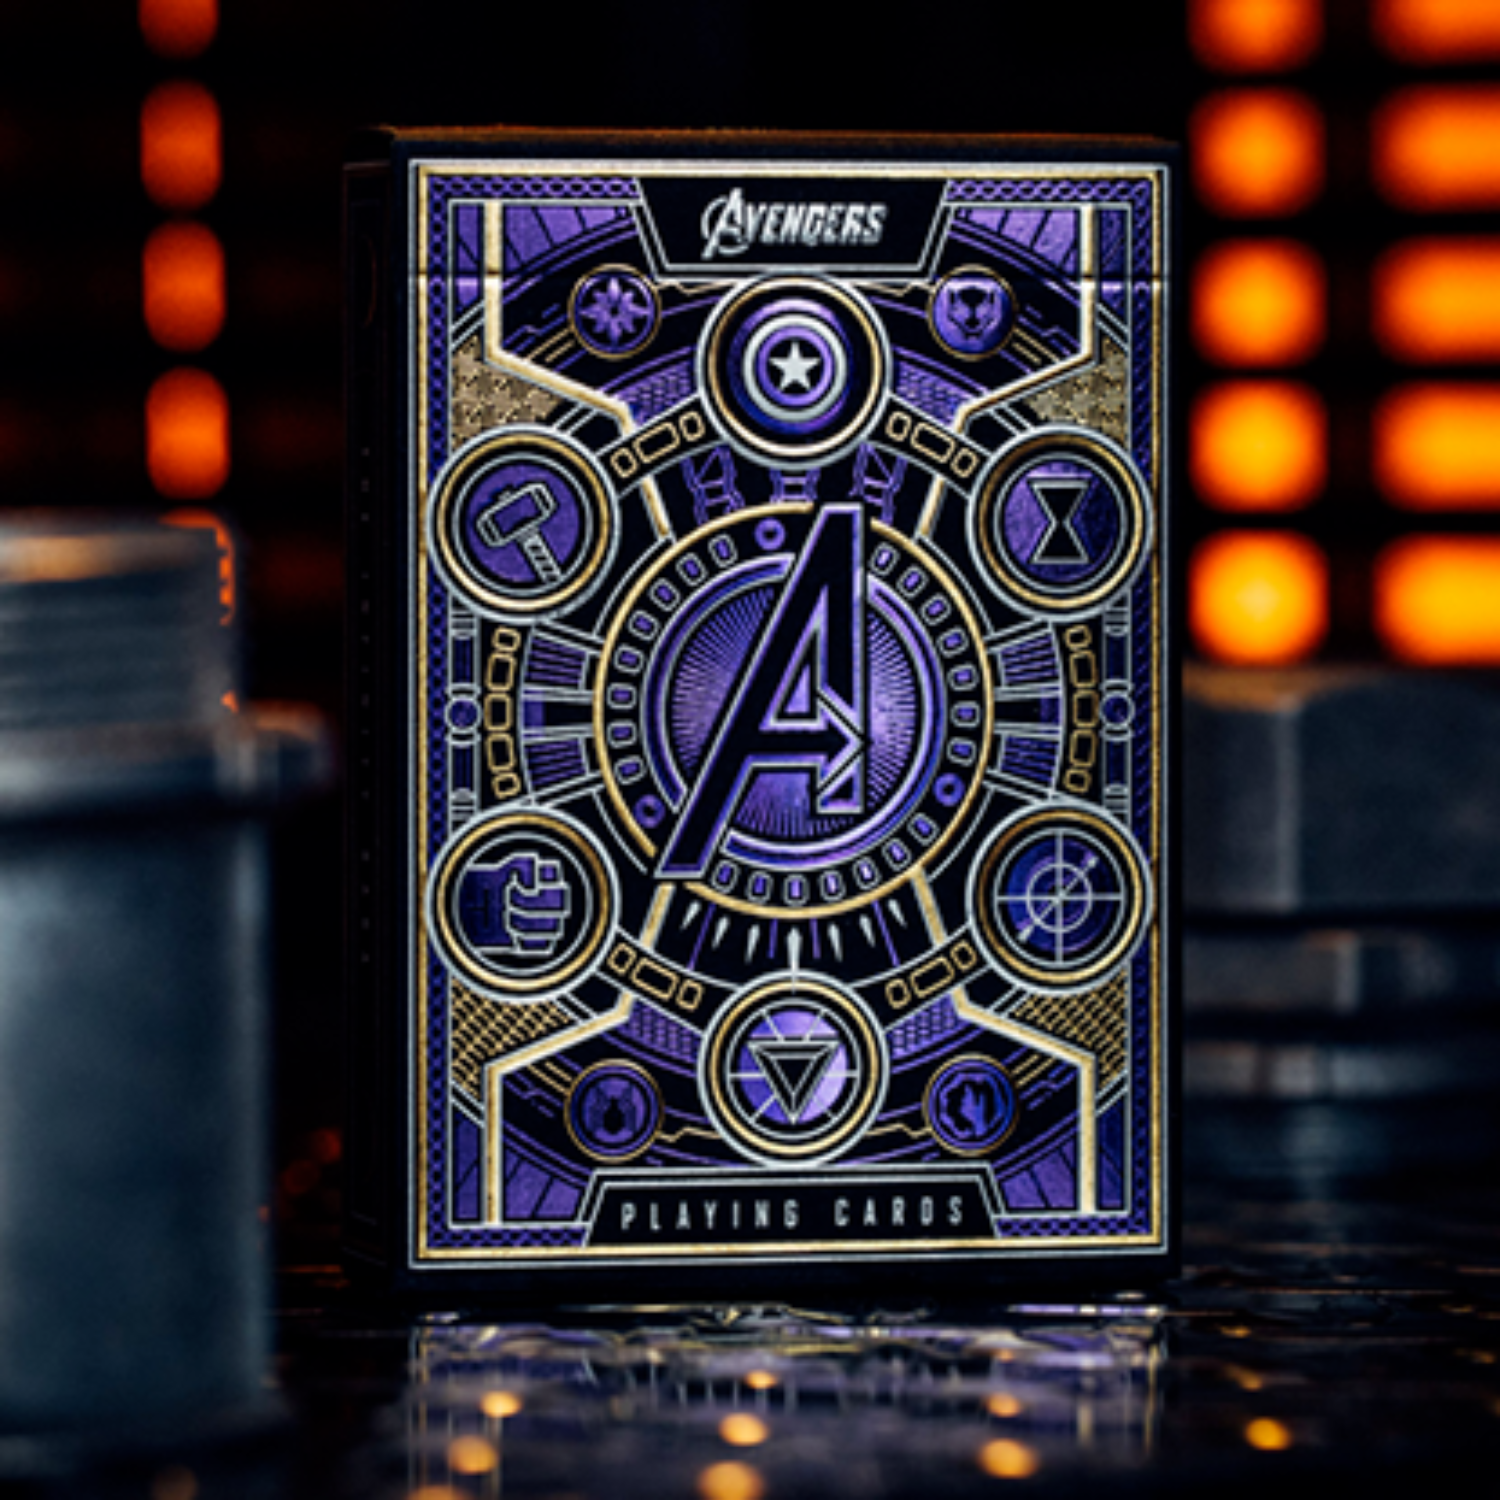 [어벤져스 인피니티 사가 플레잉카드] Avengers Infinity Saga Playing Cards